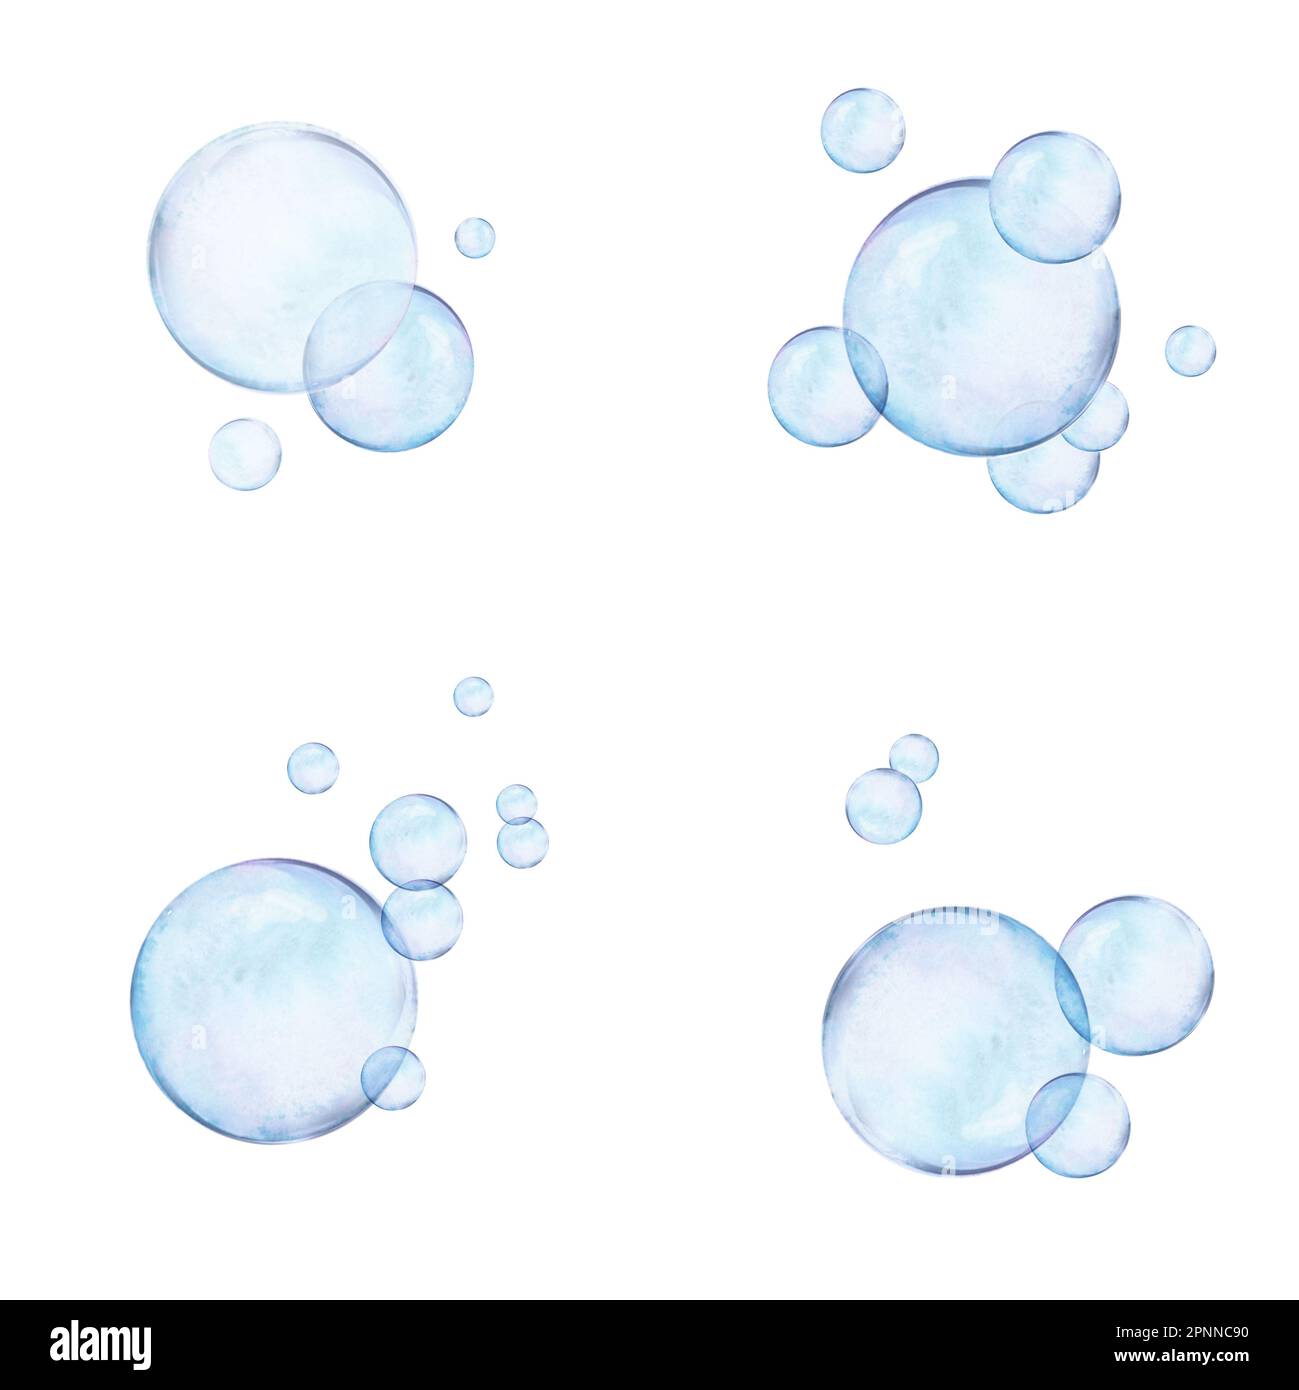 Acquerello tracciati set di bolle d'aria su sfondo bianco. Immagini realistiche e trasparenti per illustrazioni, adesivi, logo, stampa in tessuto Foto Stock